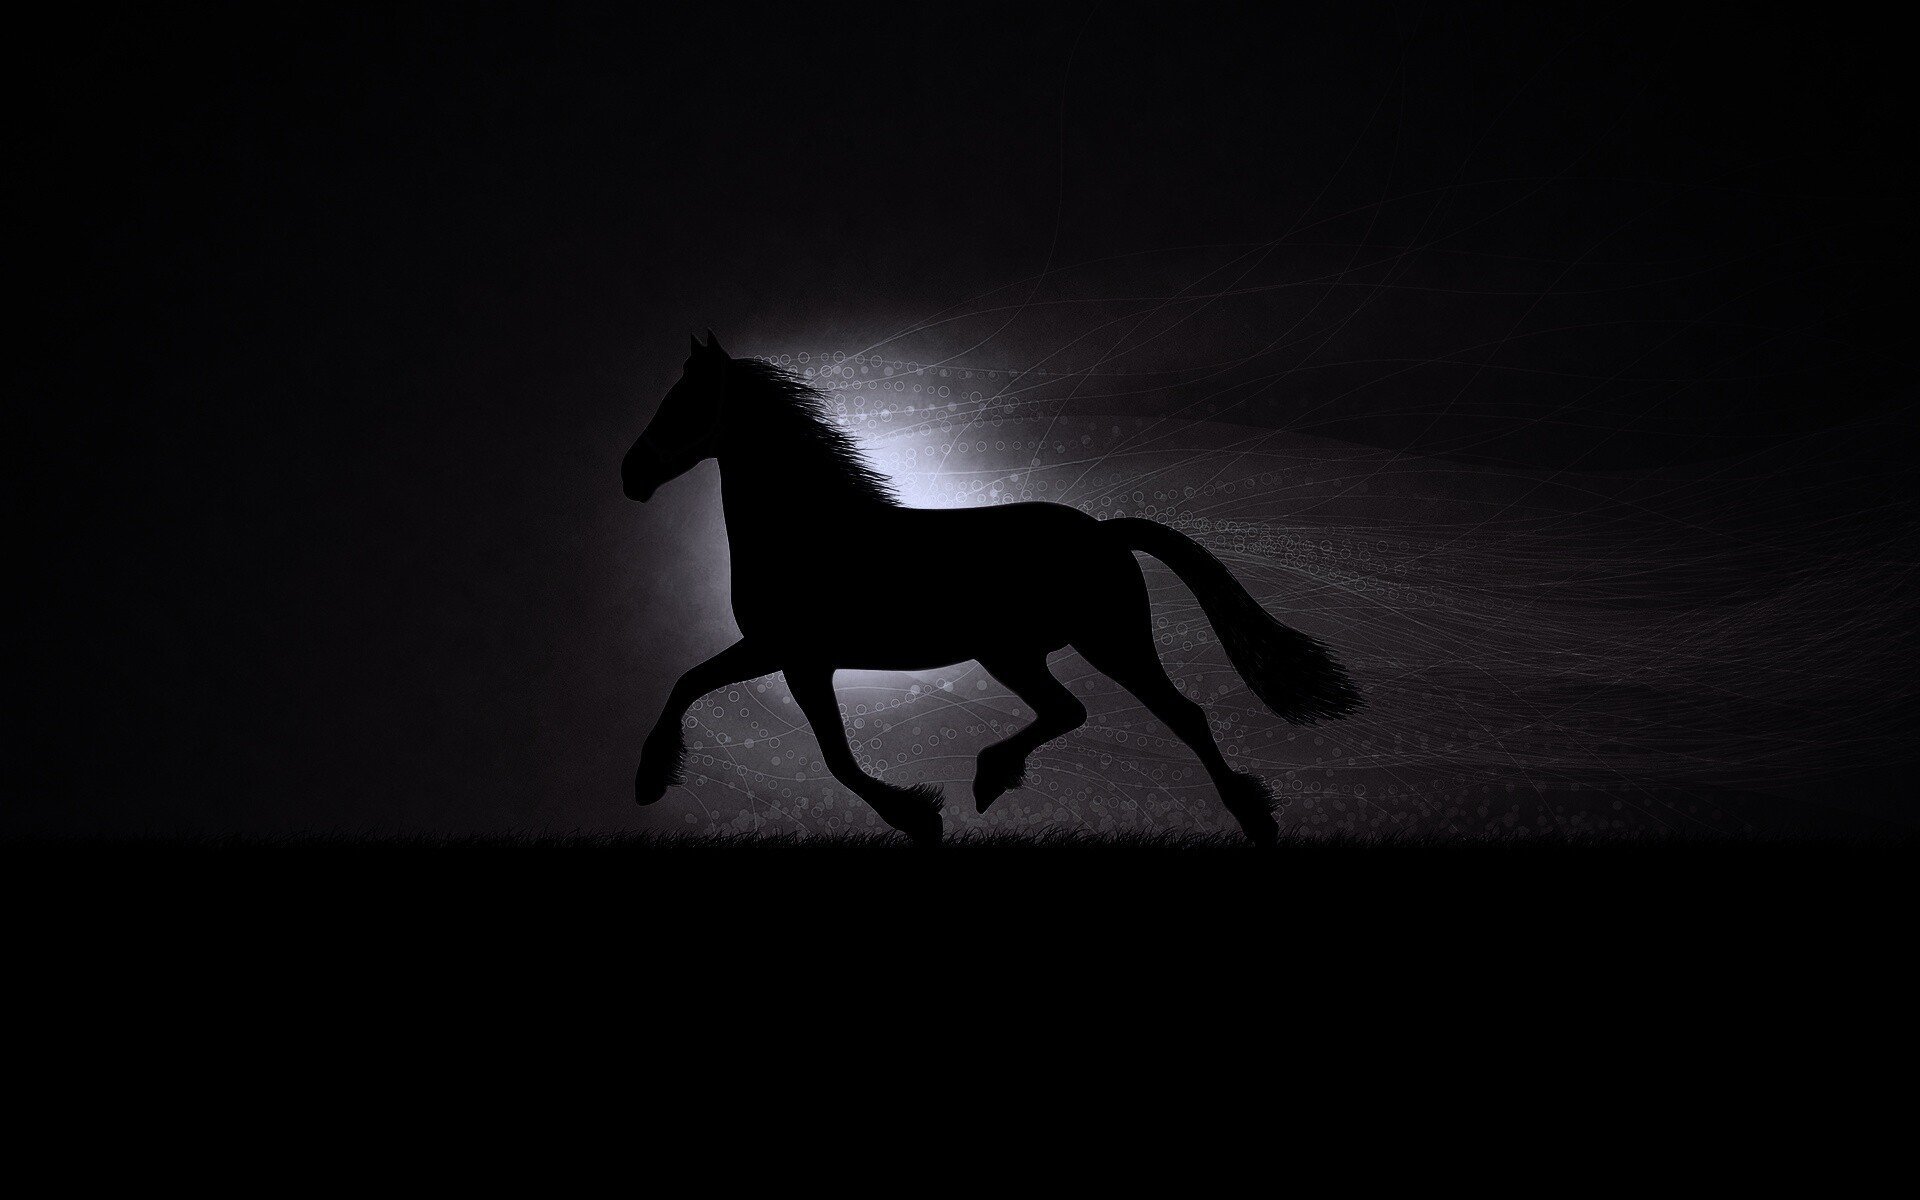 Конь на черном фоне